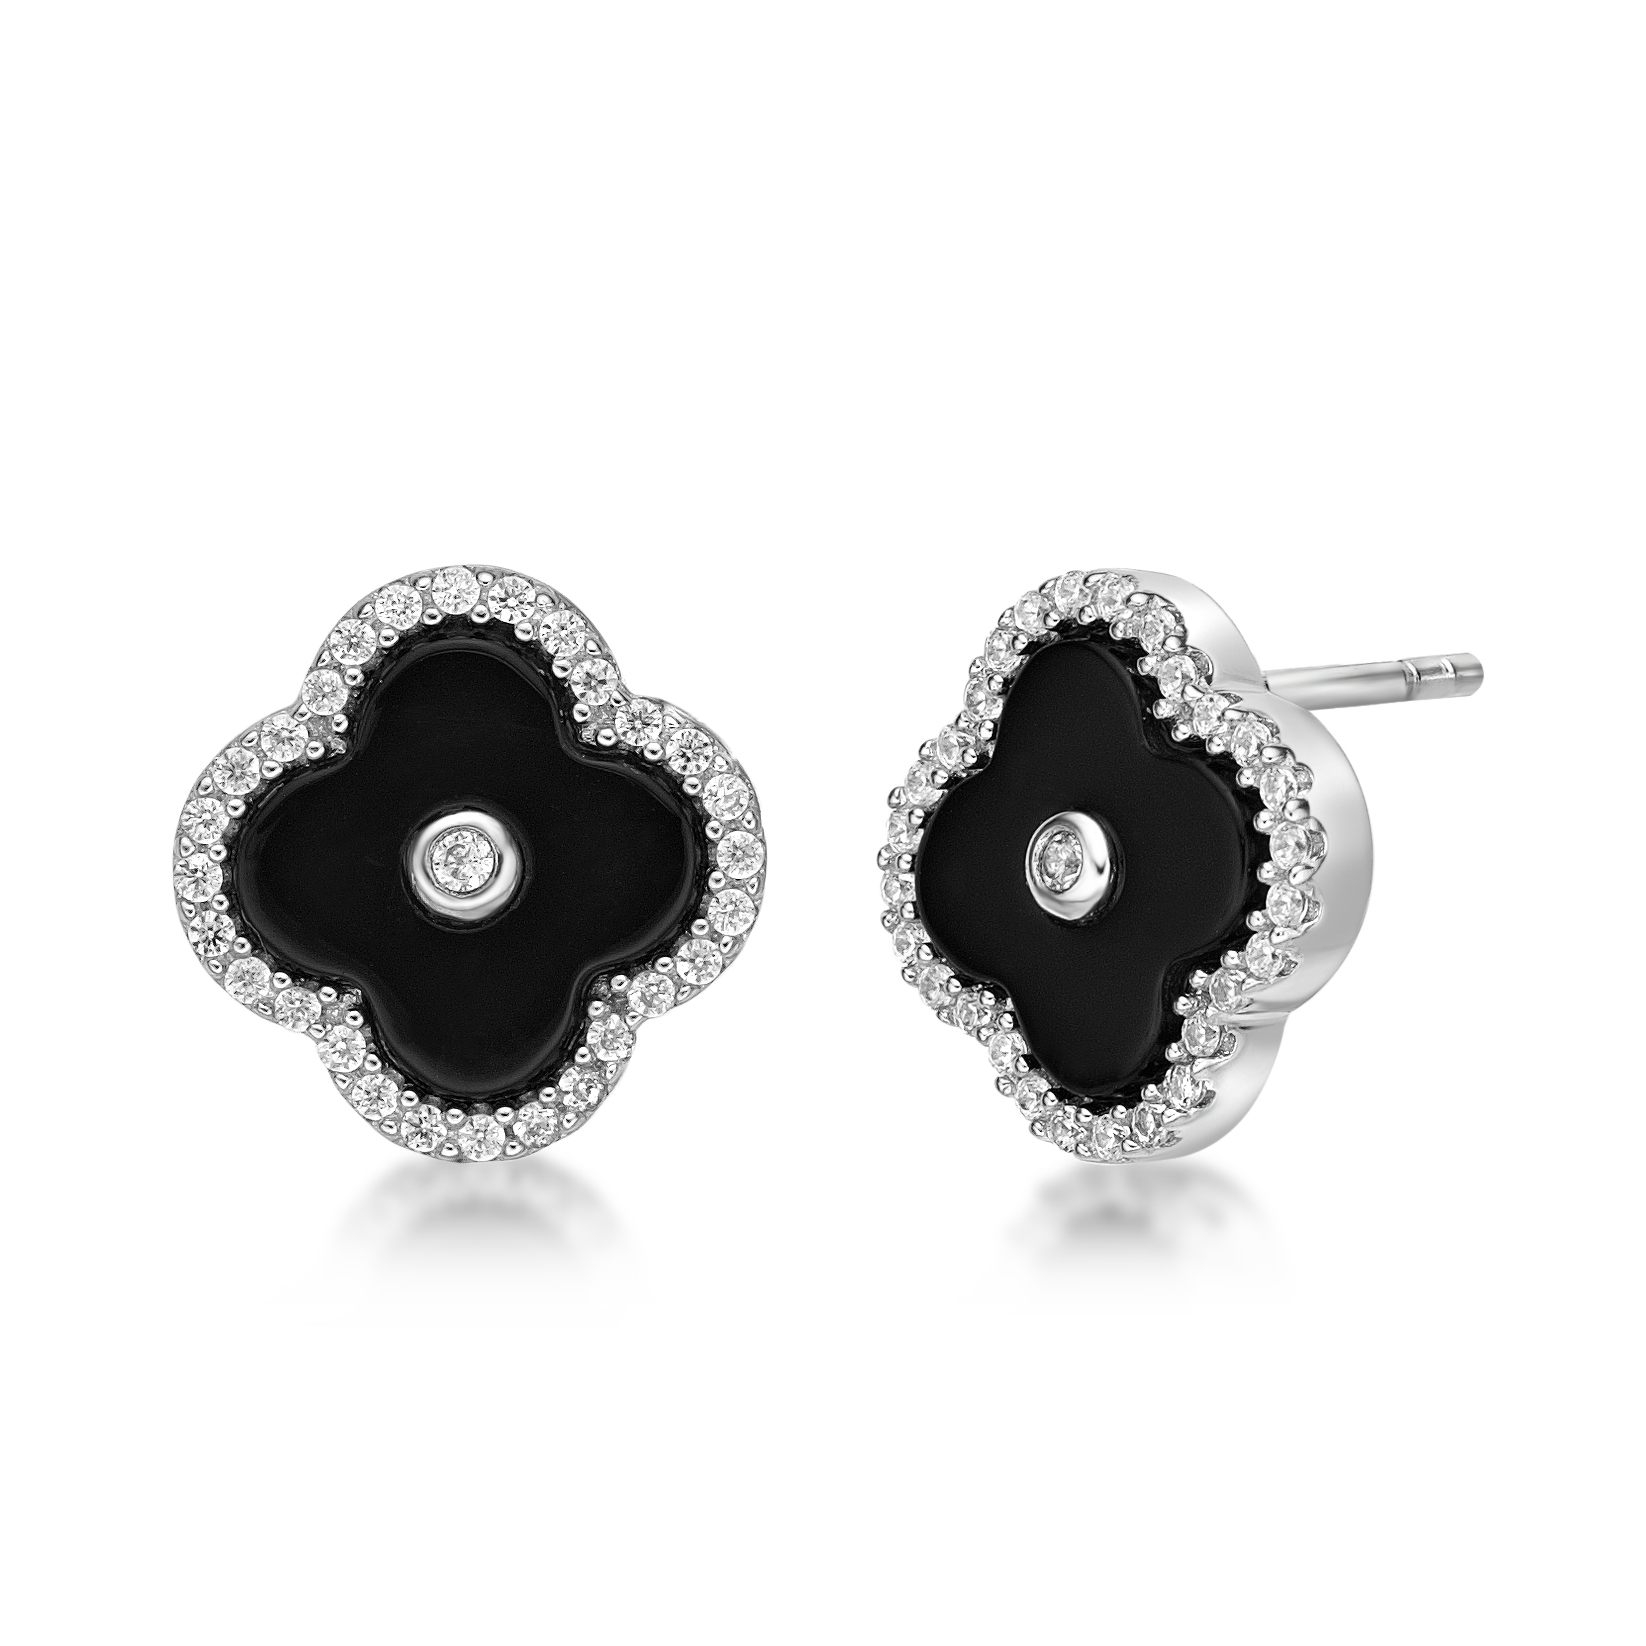 51076-earrings-fashion-jewelry-sterling-silver-51076-4.jpg